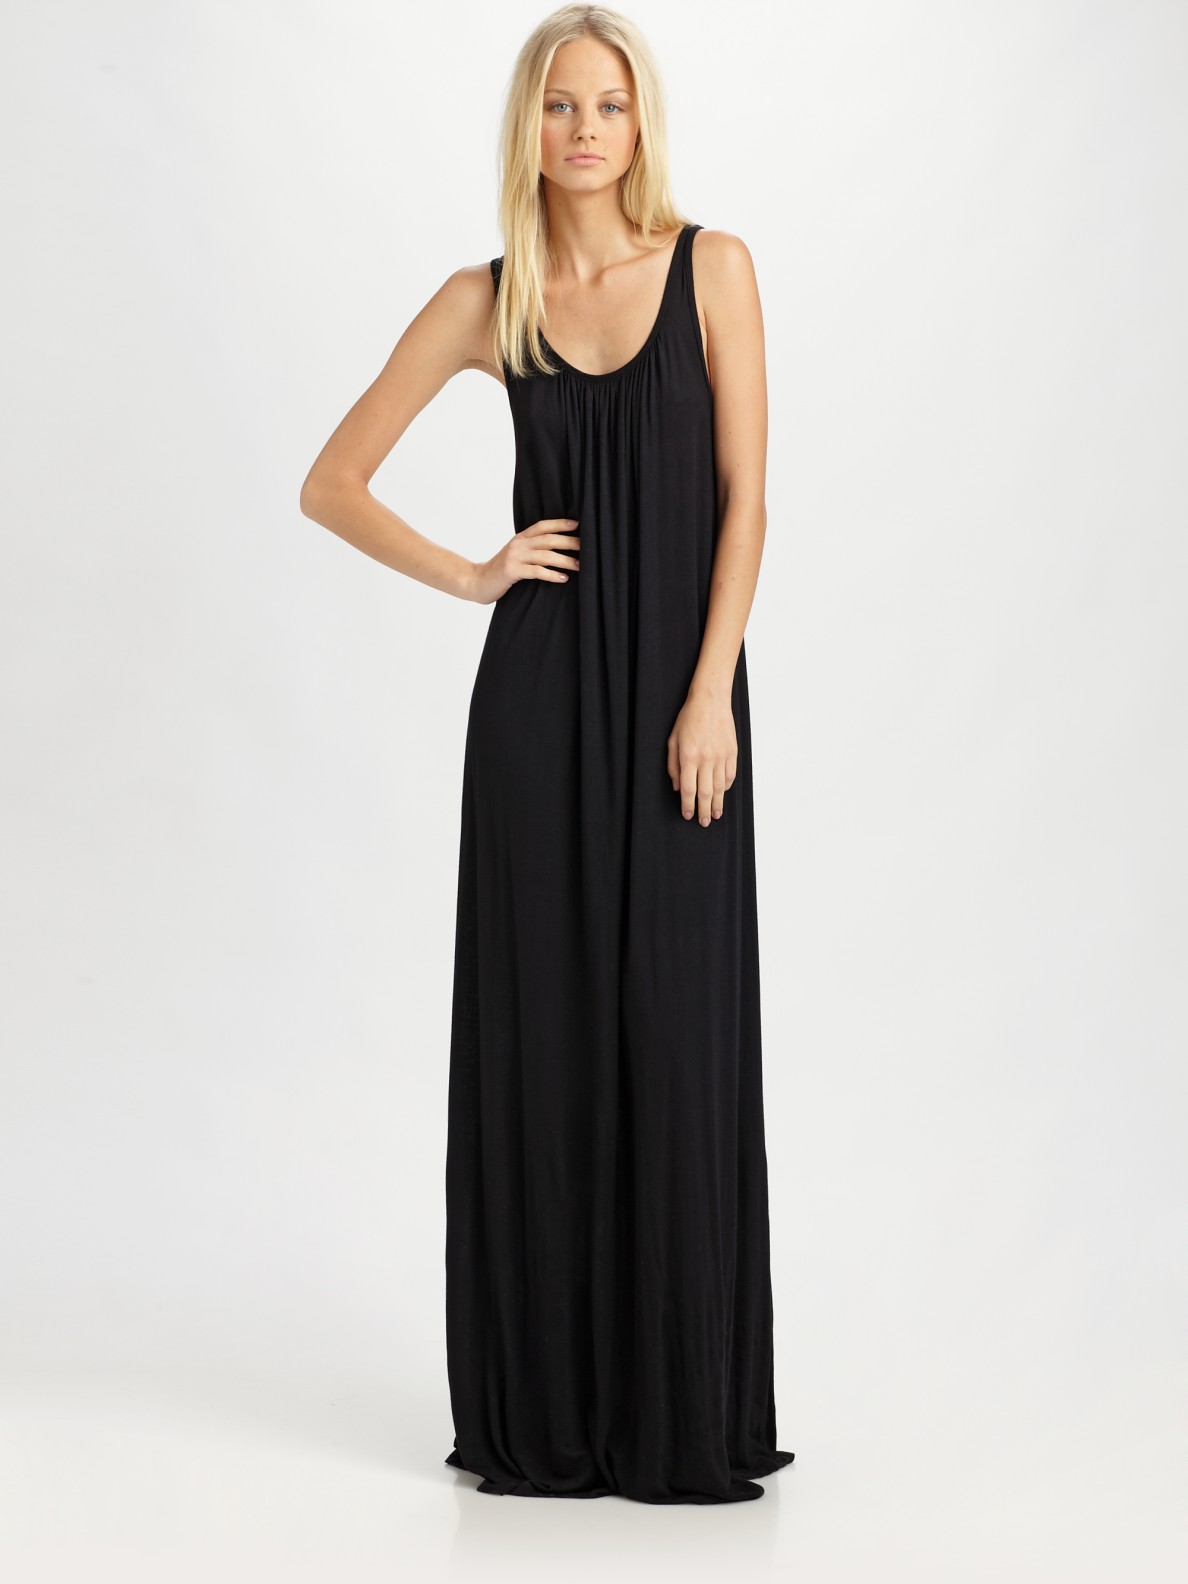 Lyst - Lna Nightingale Maxi Dress in Black